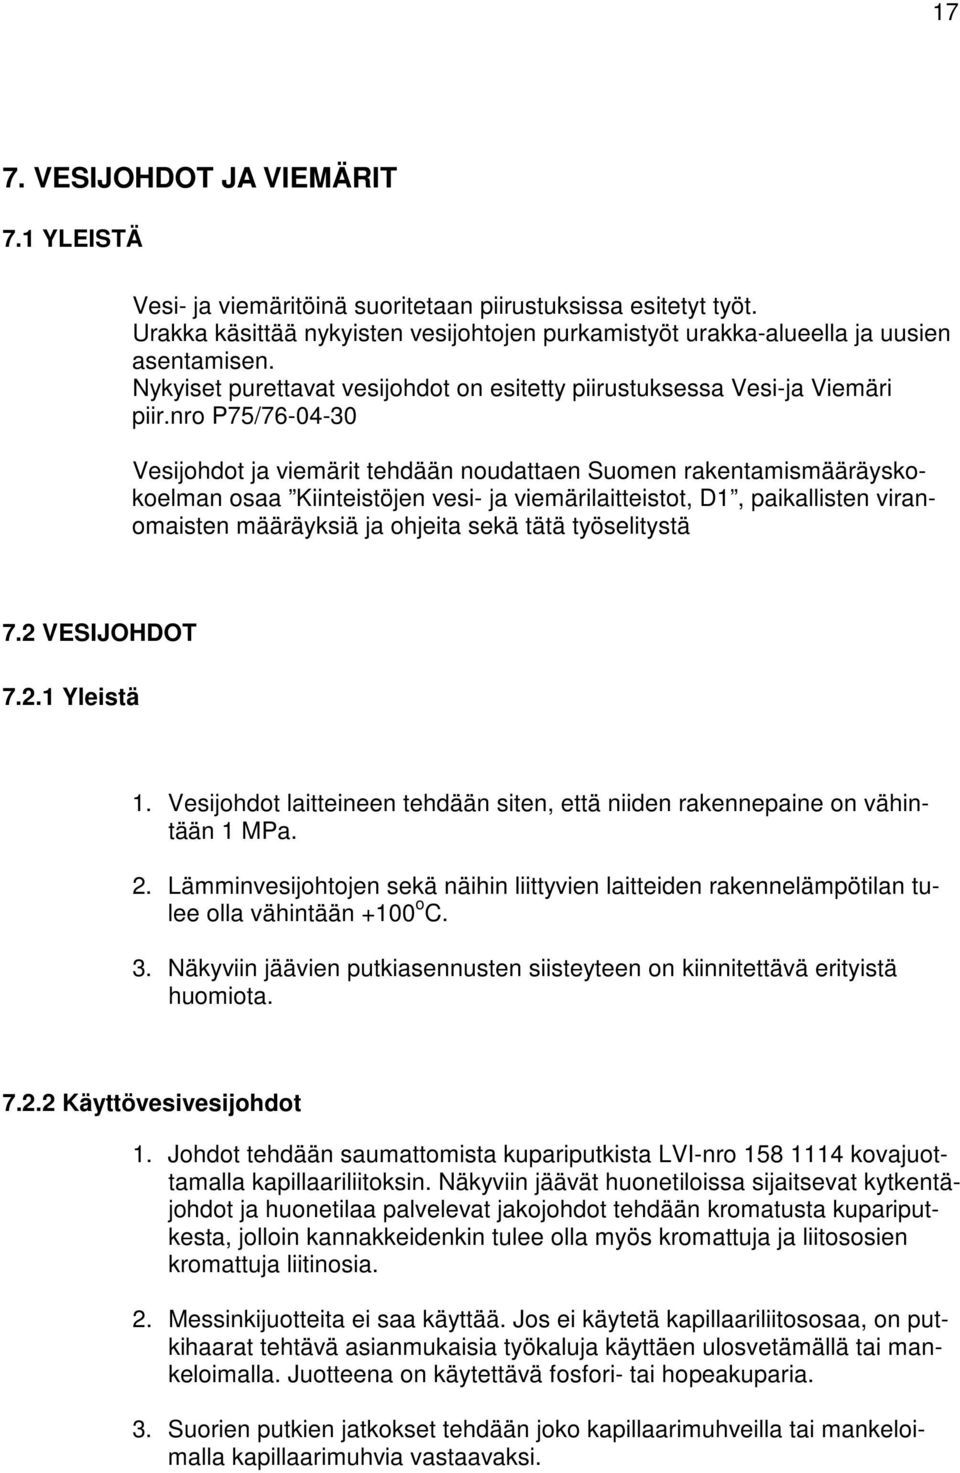 nro P75/76-04-30 Vesijohdot ja viemärit tehdään noudattaen Suomen rakentamismääräyskokoelman osaa Kiinteistöjen vesi- ja viemärilaitteistot, D1, paikallisten viranomaisten määräyksiä ja ohjeita sekä